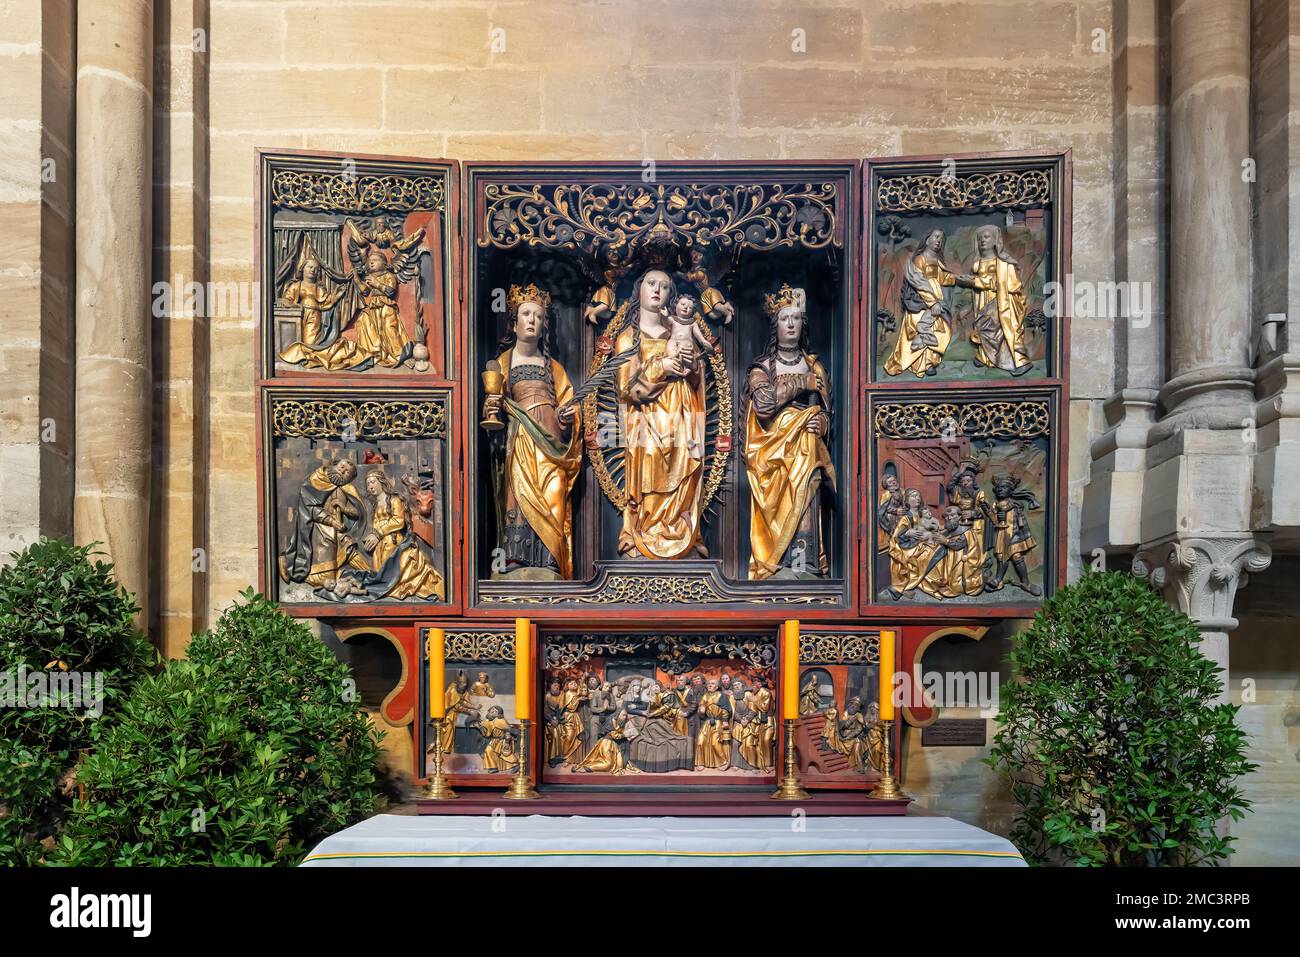 St. Marientalar von Mühlhausen im Innern des Bamberger Doms - Bamberg, Bayern, Deutschland Stockfoto